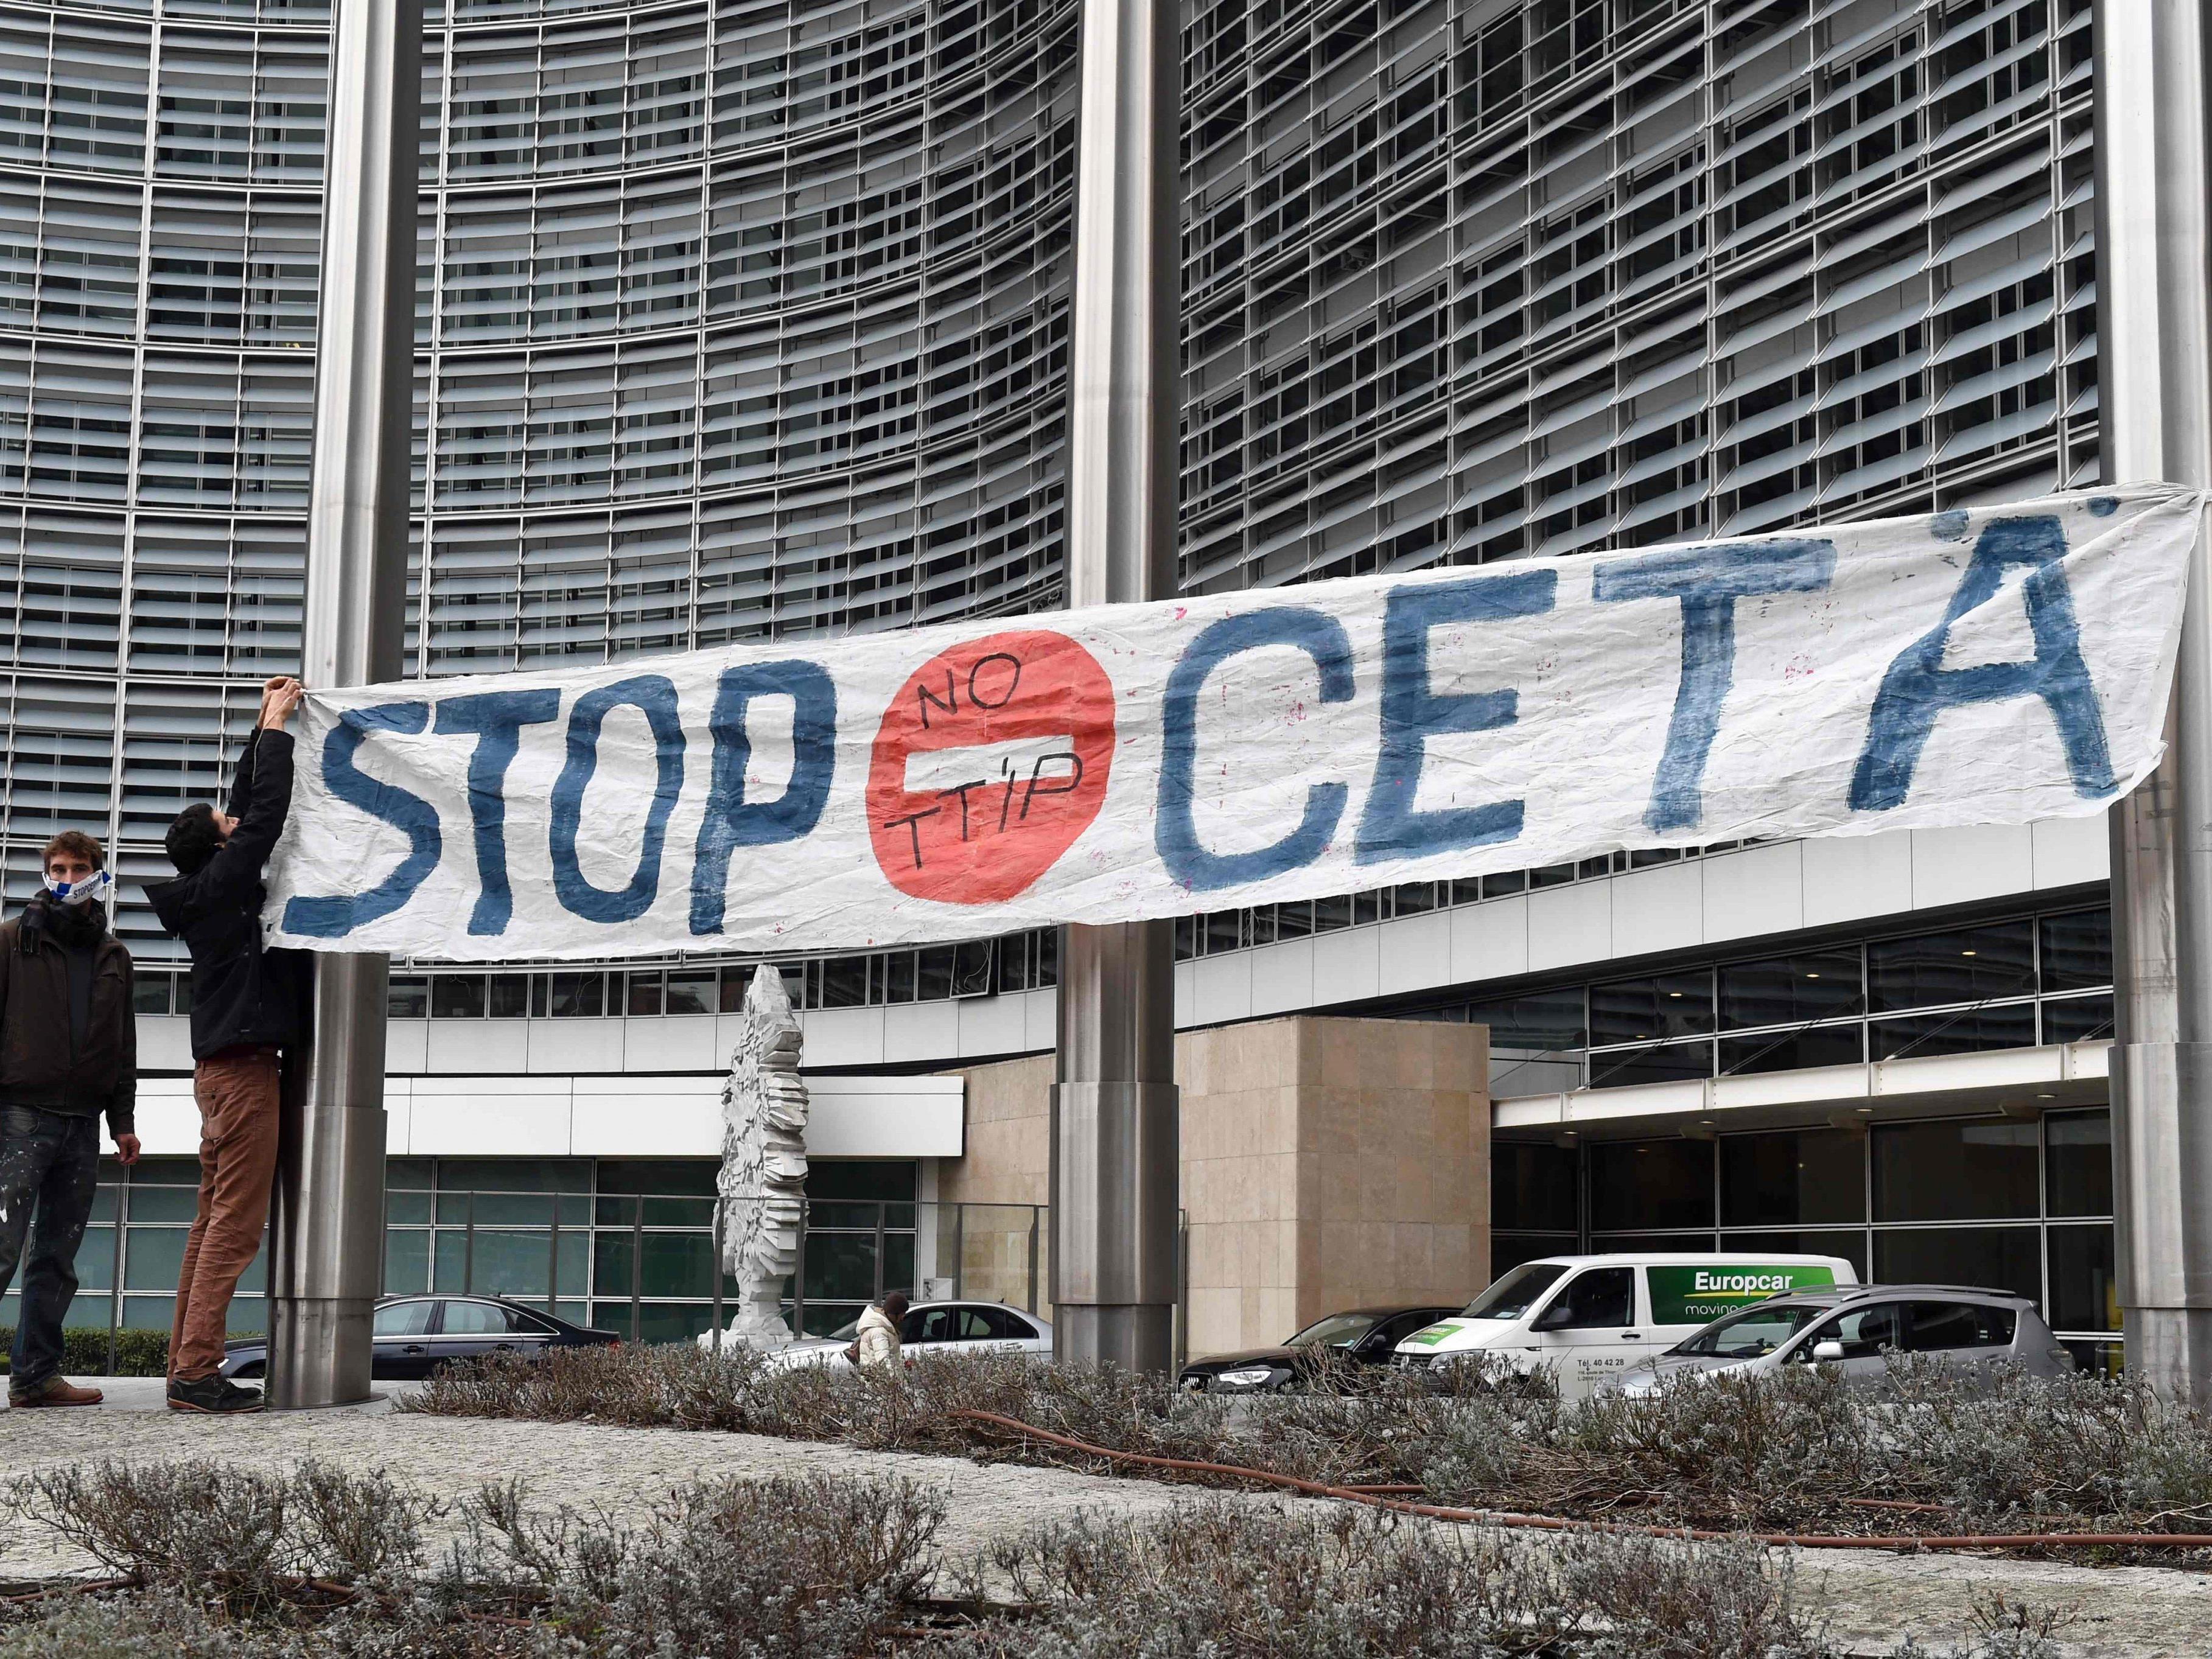 Proteste gegen Ceta gab es in ganz Europa